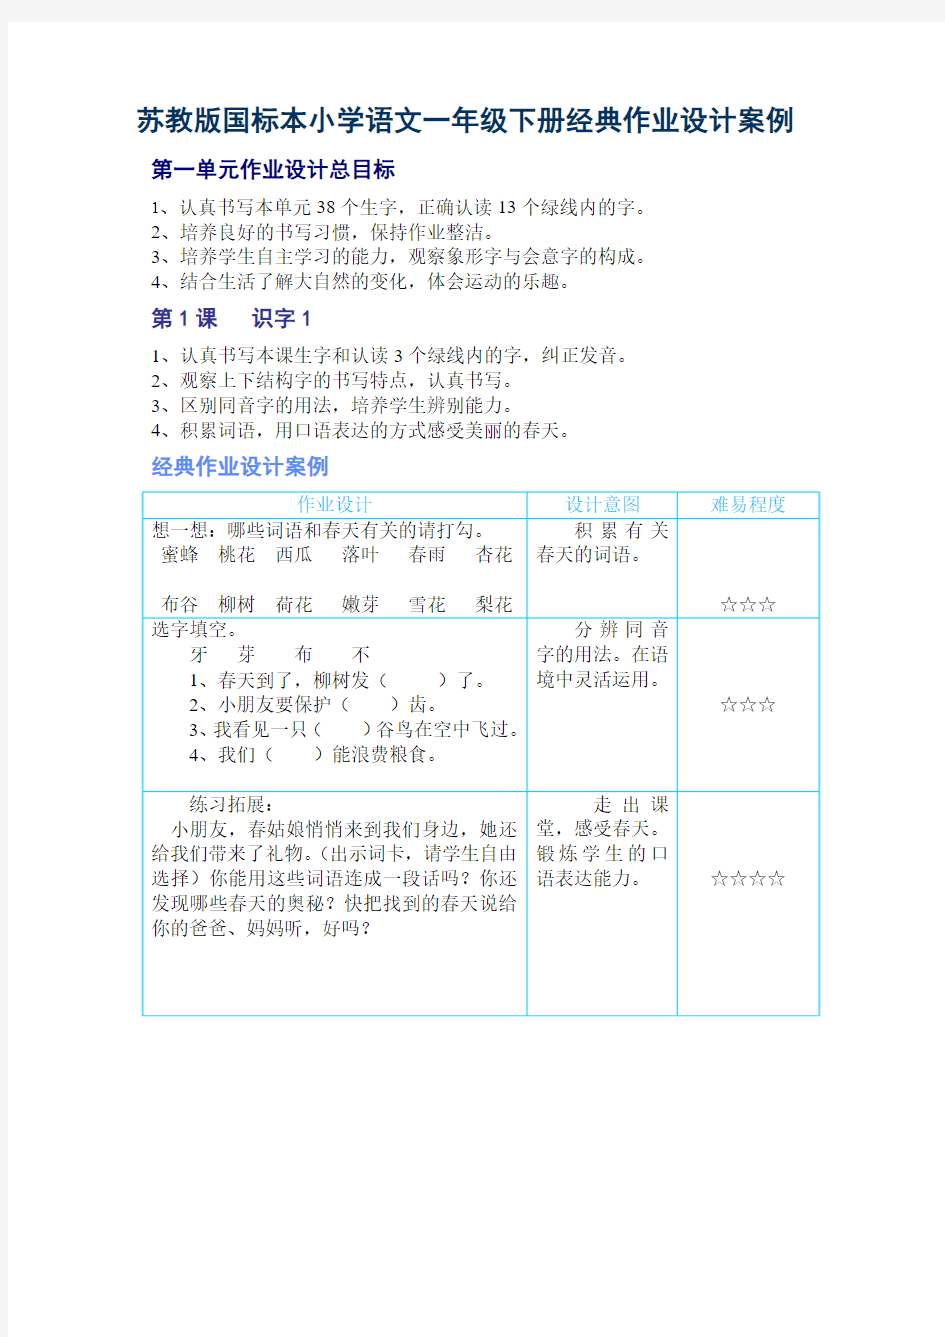 苏教版国标本小学语文一年级下册经典作业设计案例